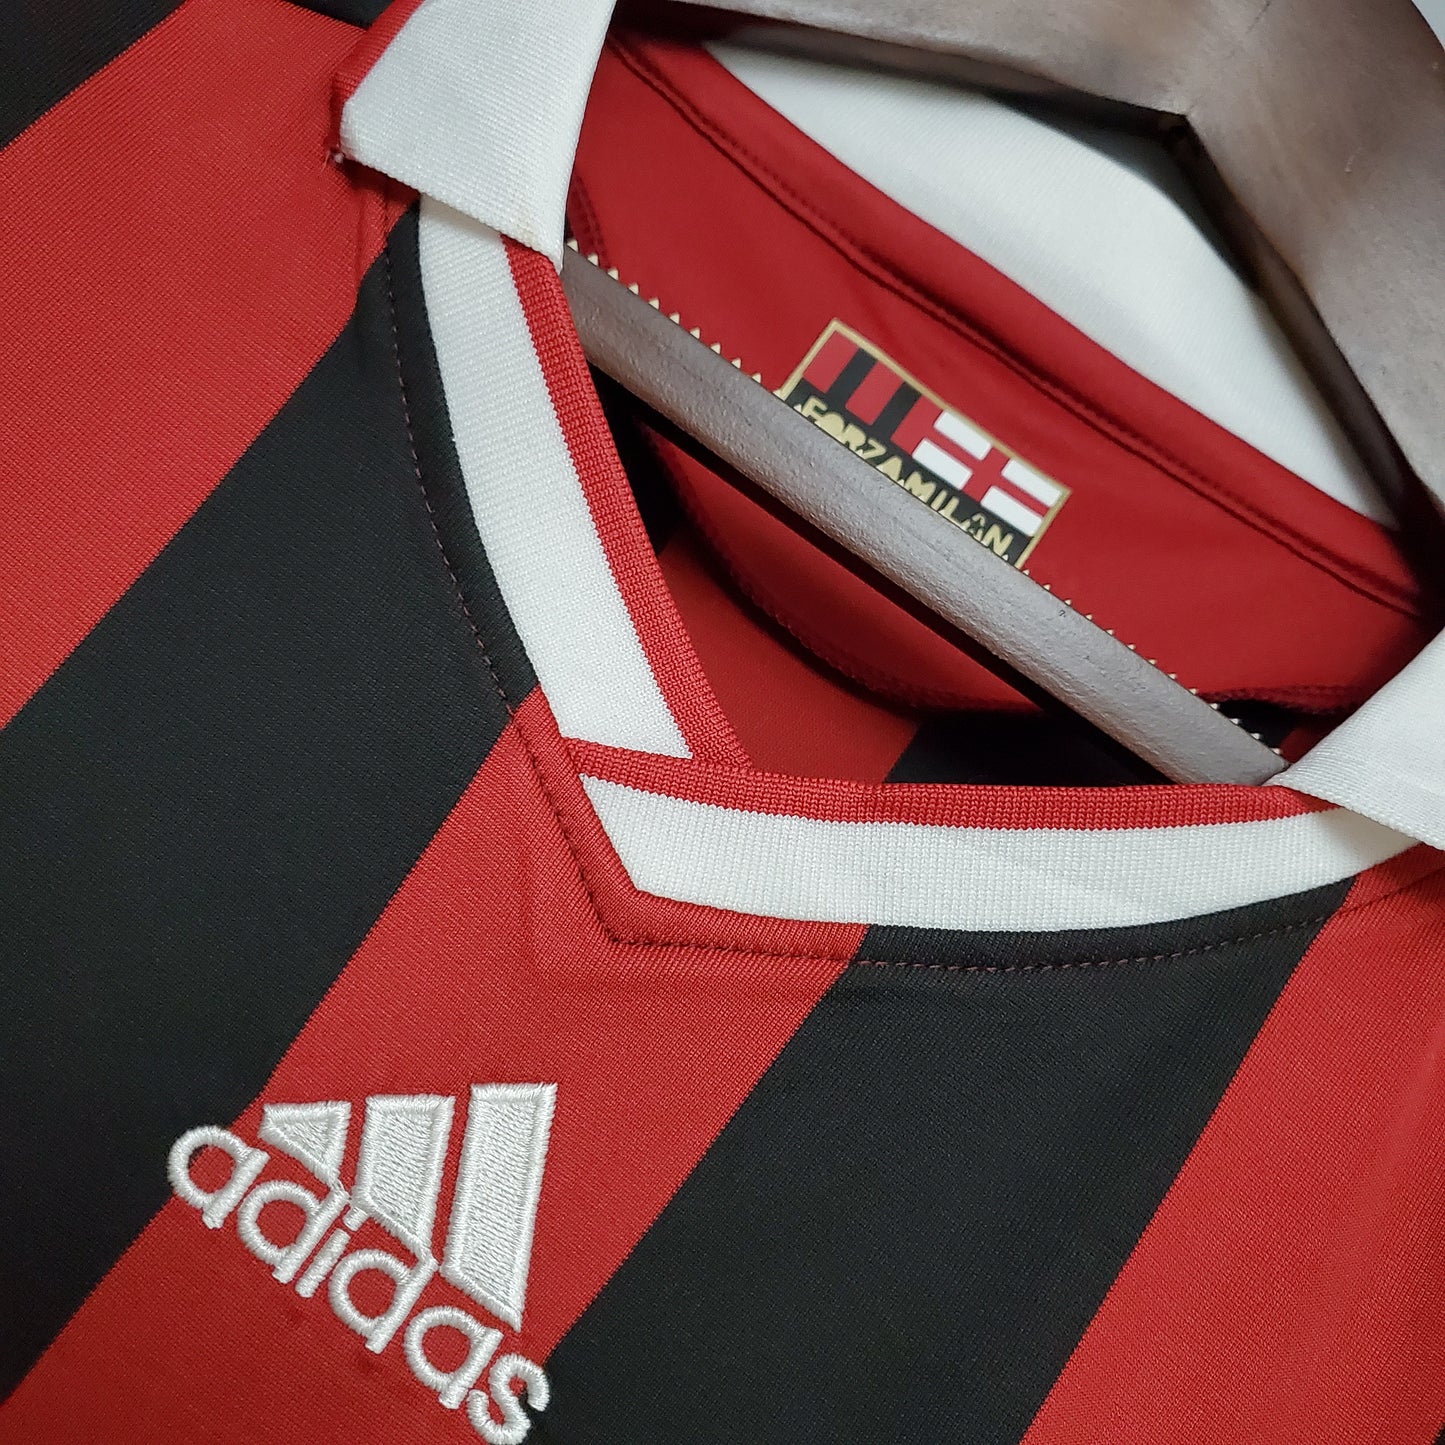 Football teams shirt and kits fan: AC Milan 2009-10 kits